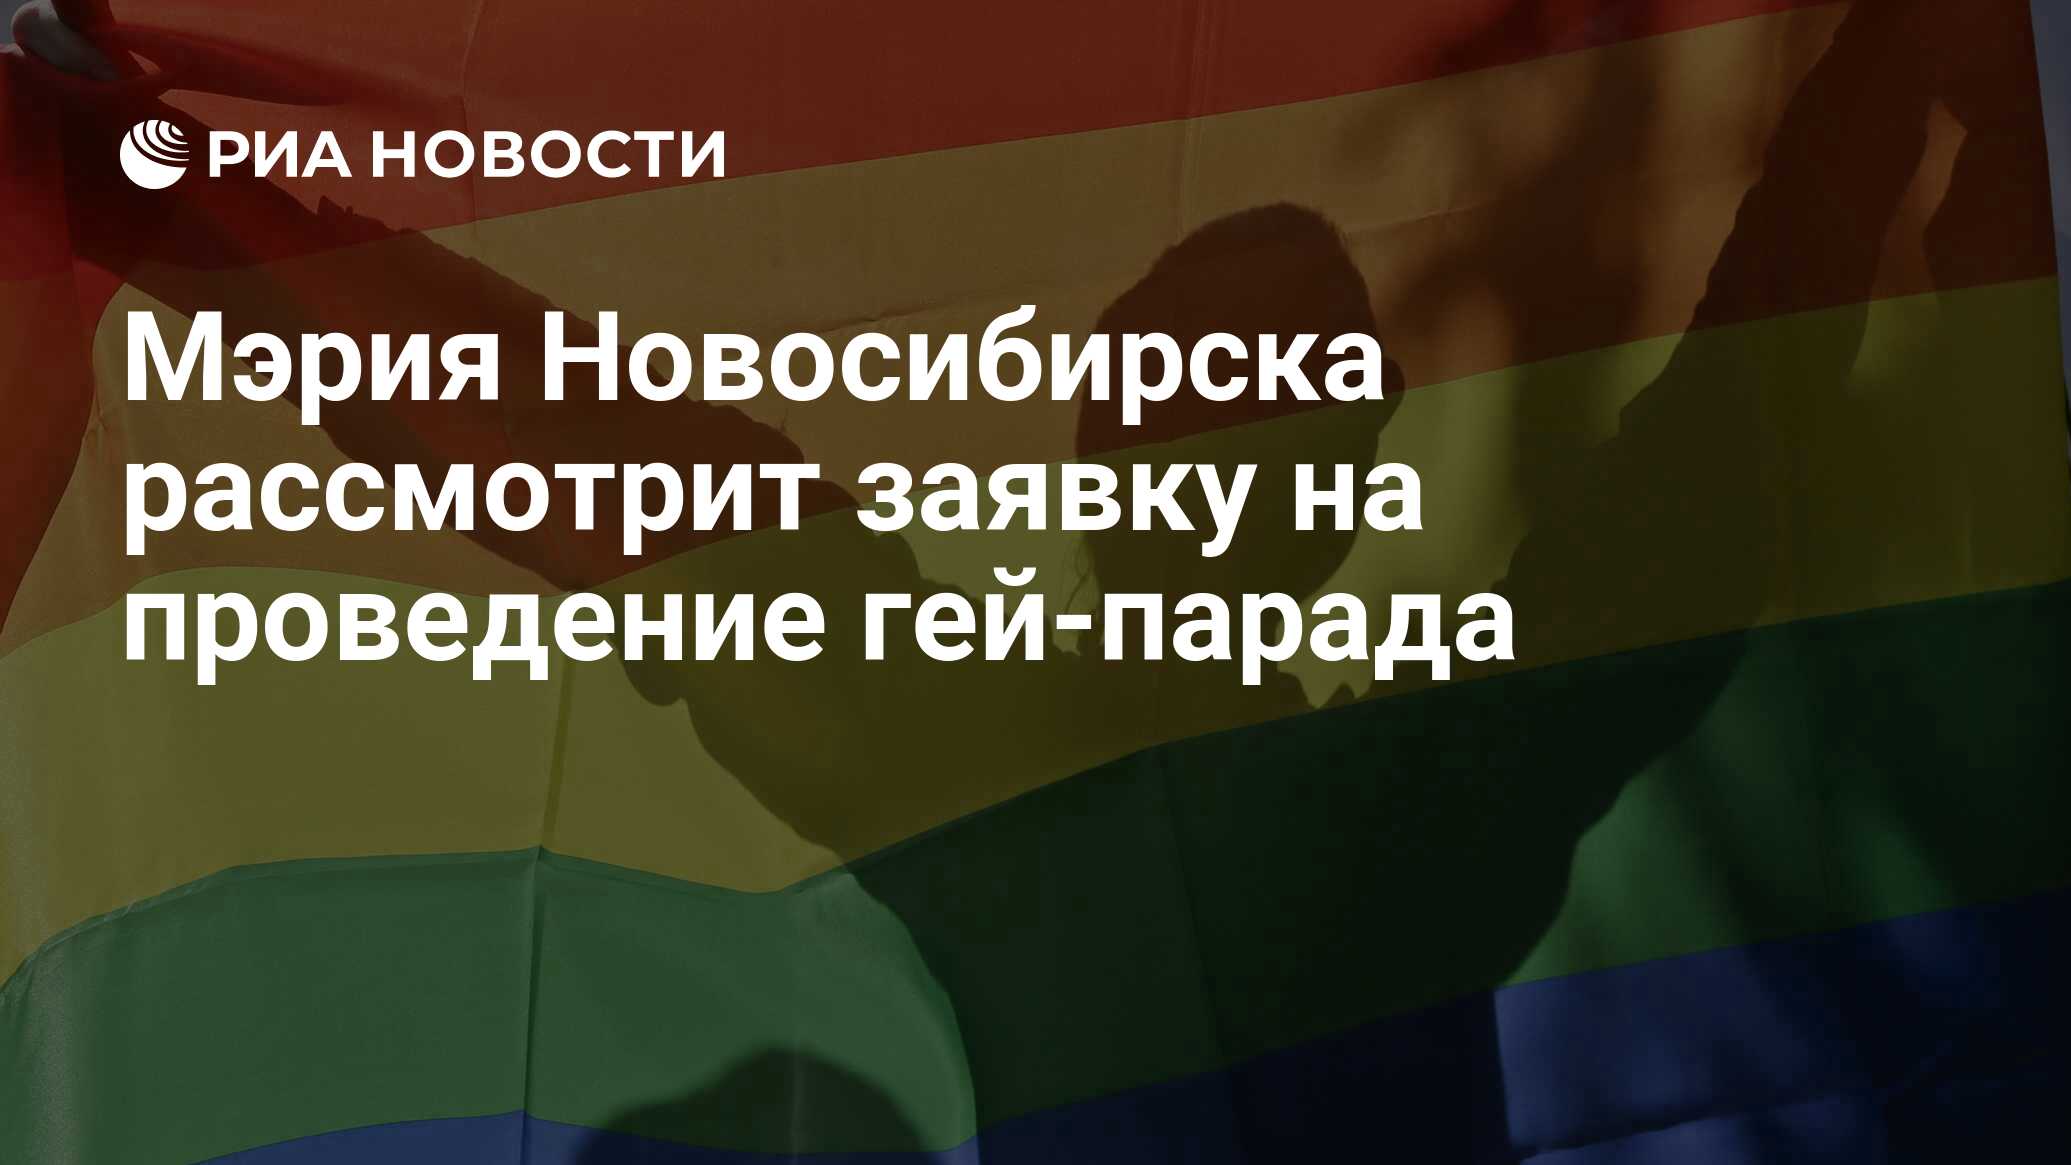 Мэрия Новосибирска рассмотрит заявку на проведение гей-парада - РИА  Новости, 15.03.2021